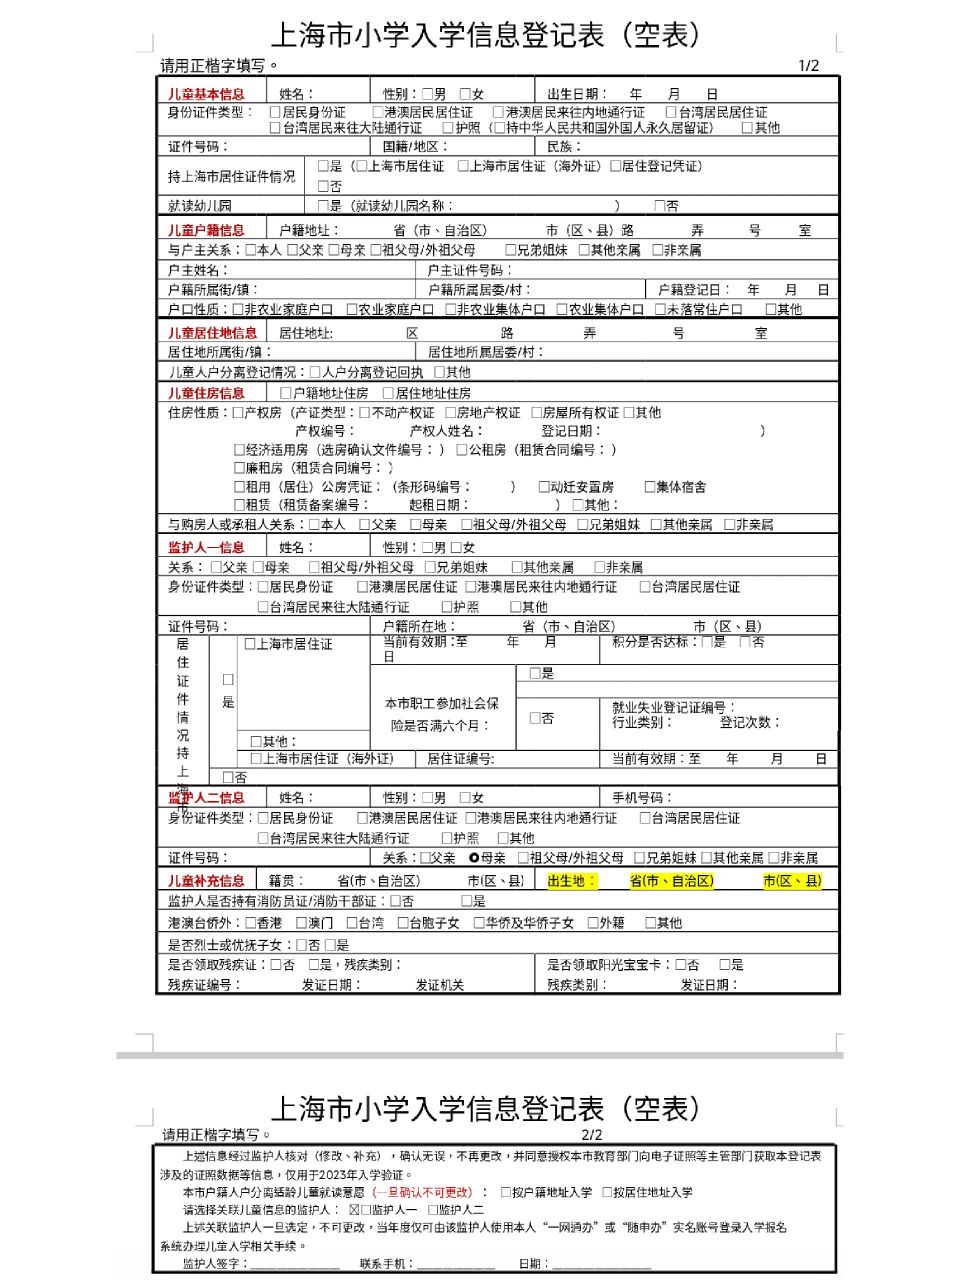 上海市小学入学信息登记表(正表) 模板来啦,干货